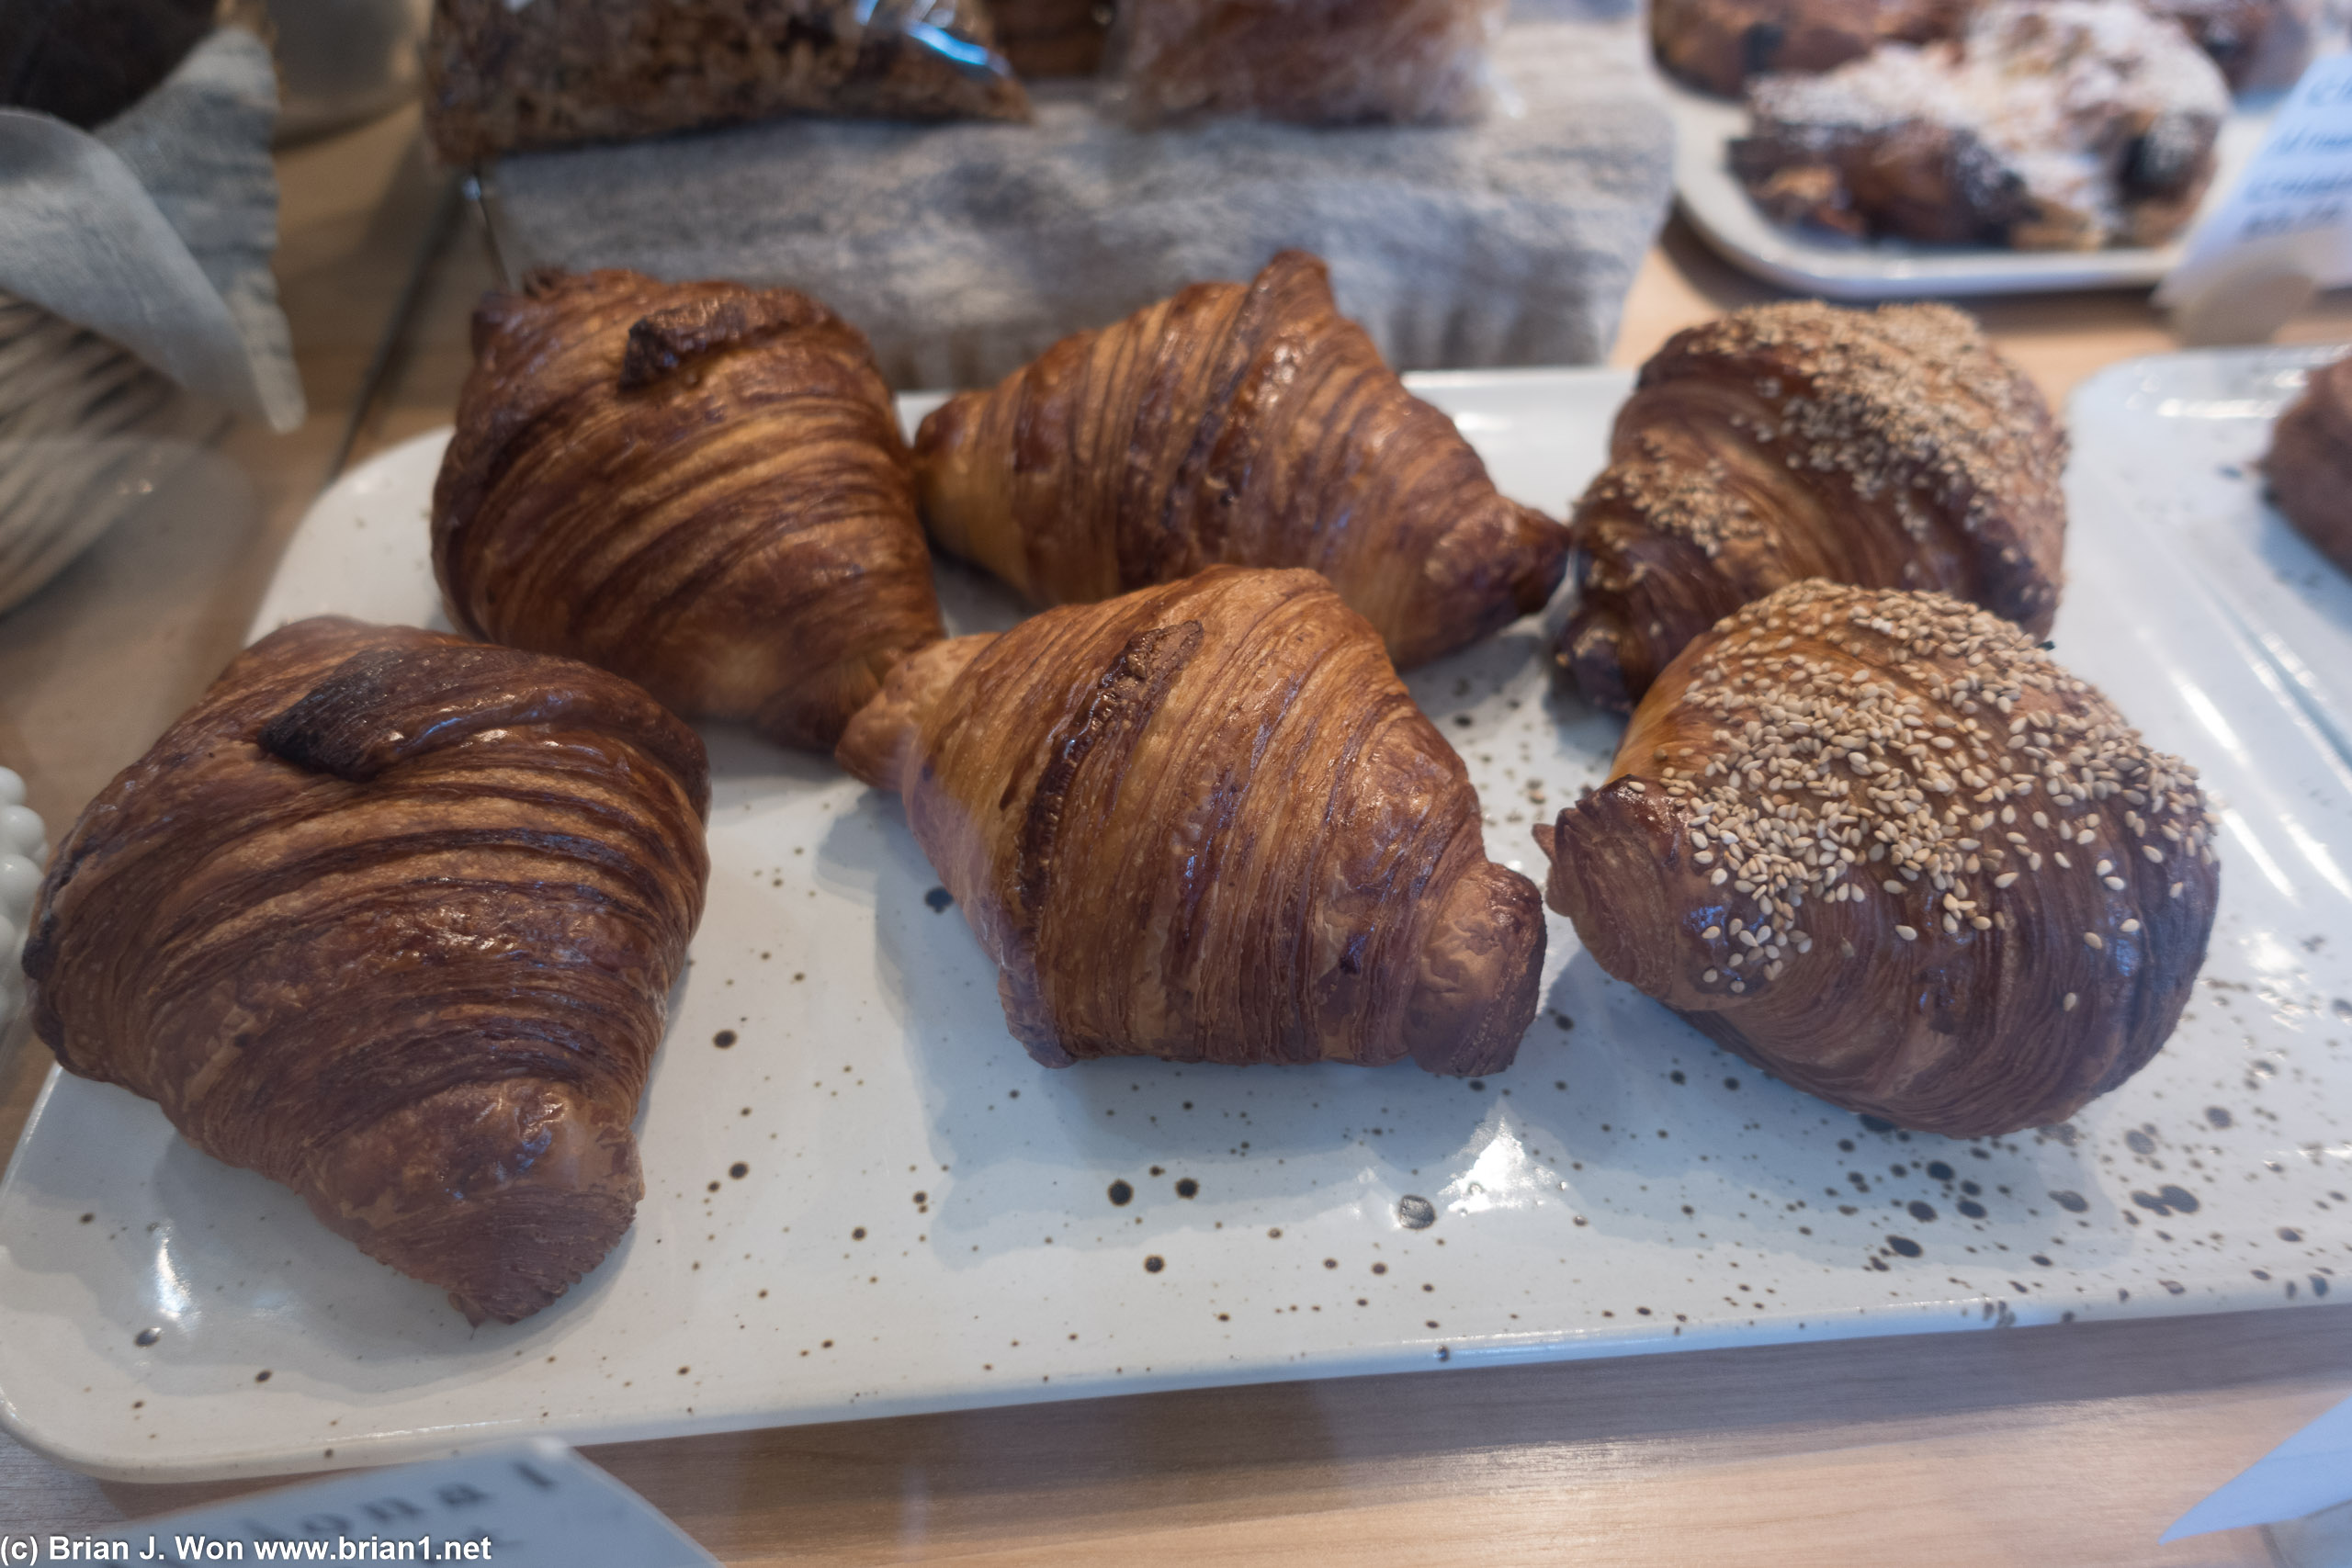 Plain croissants on the left/center.